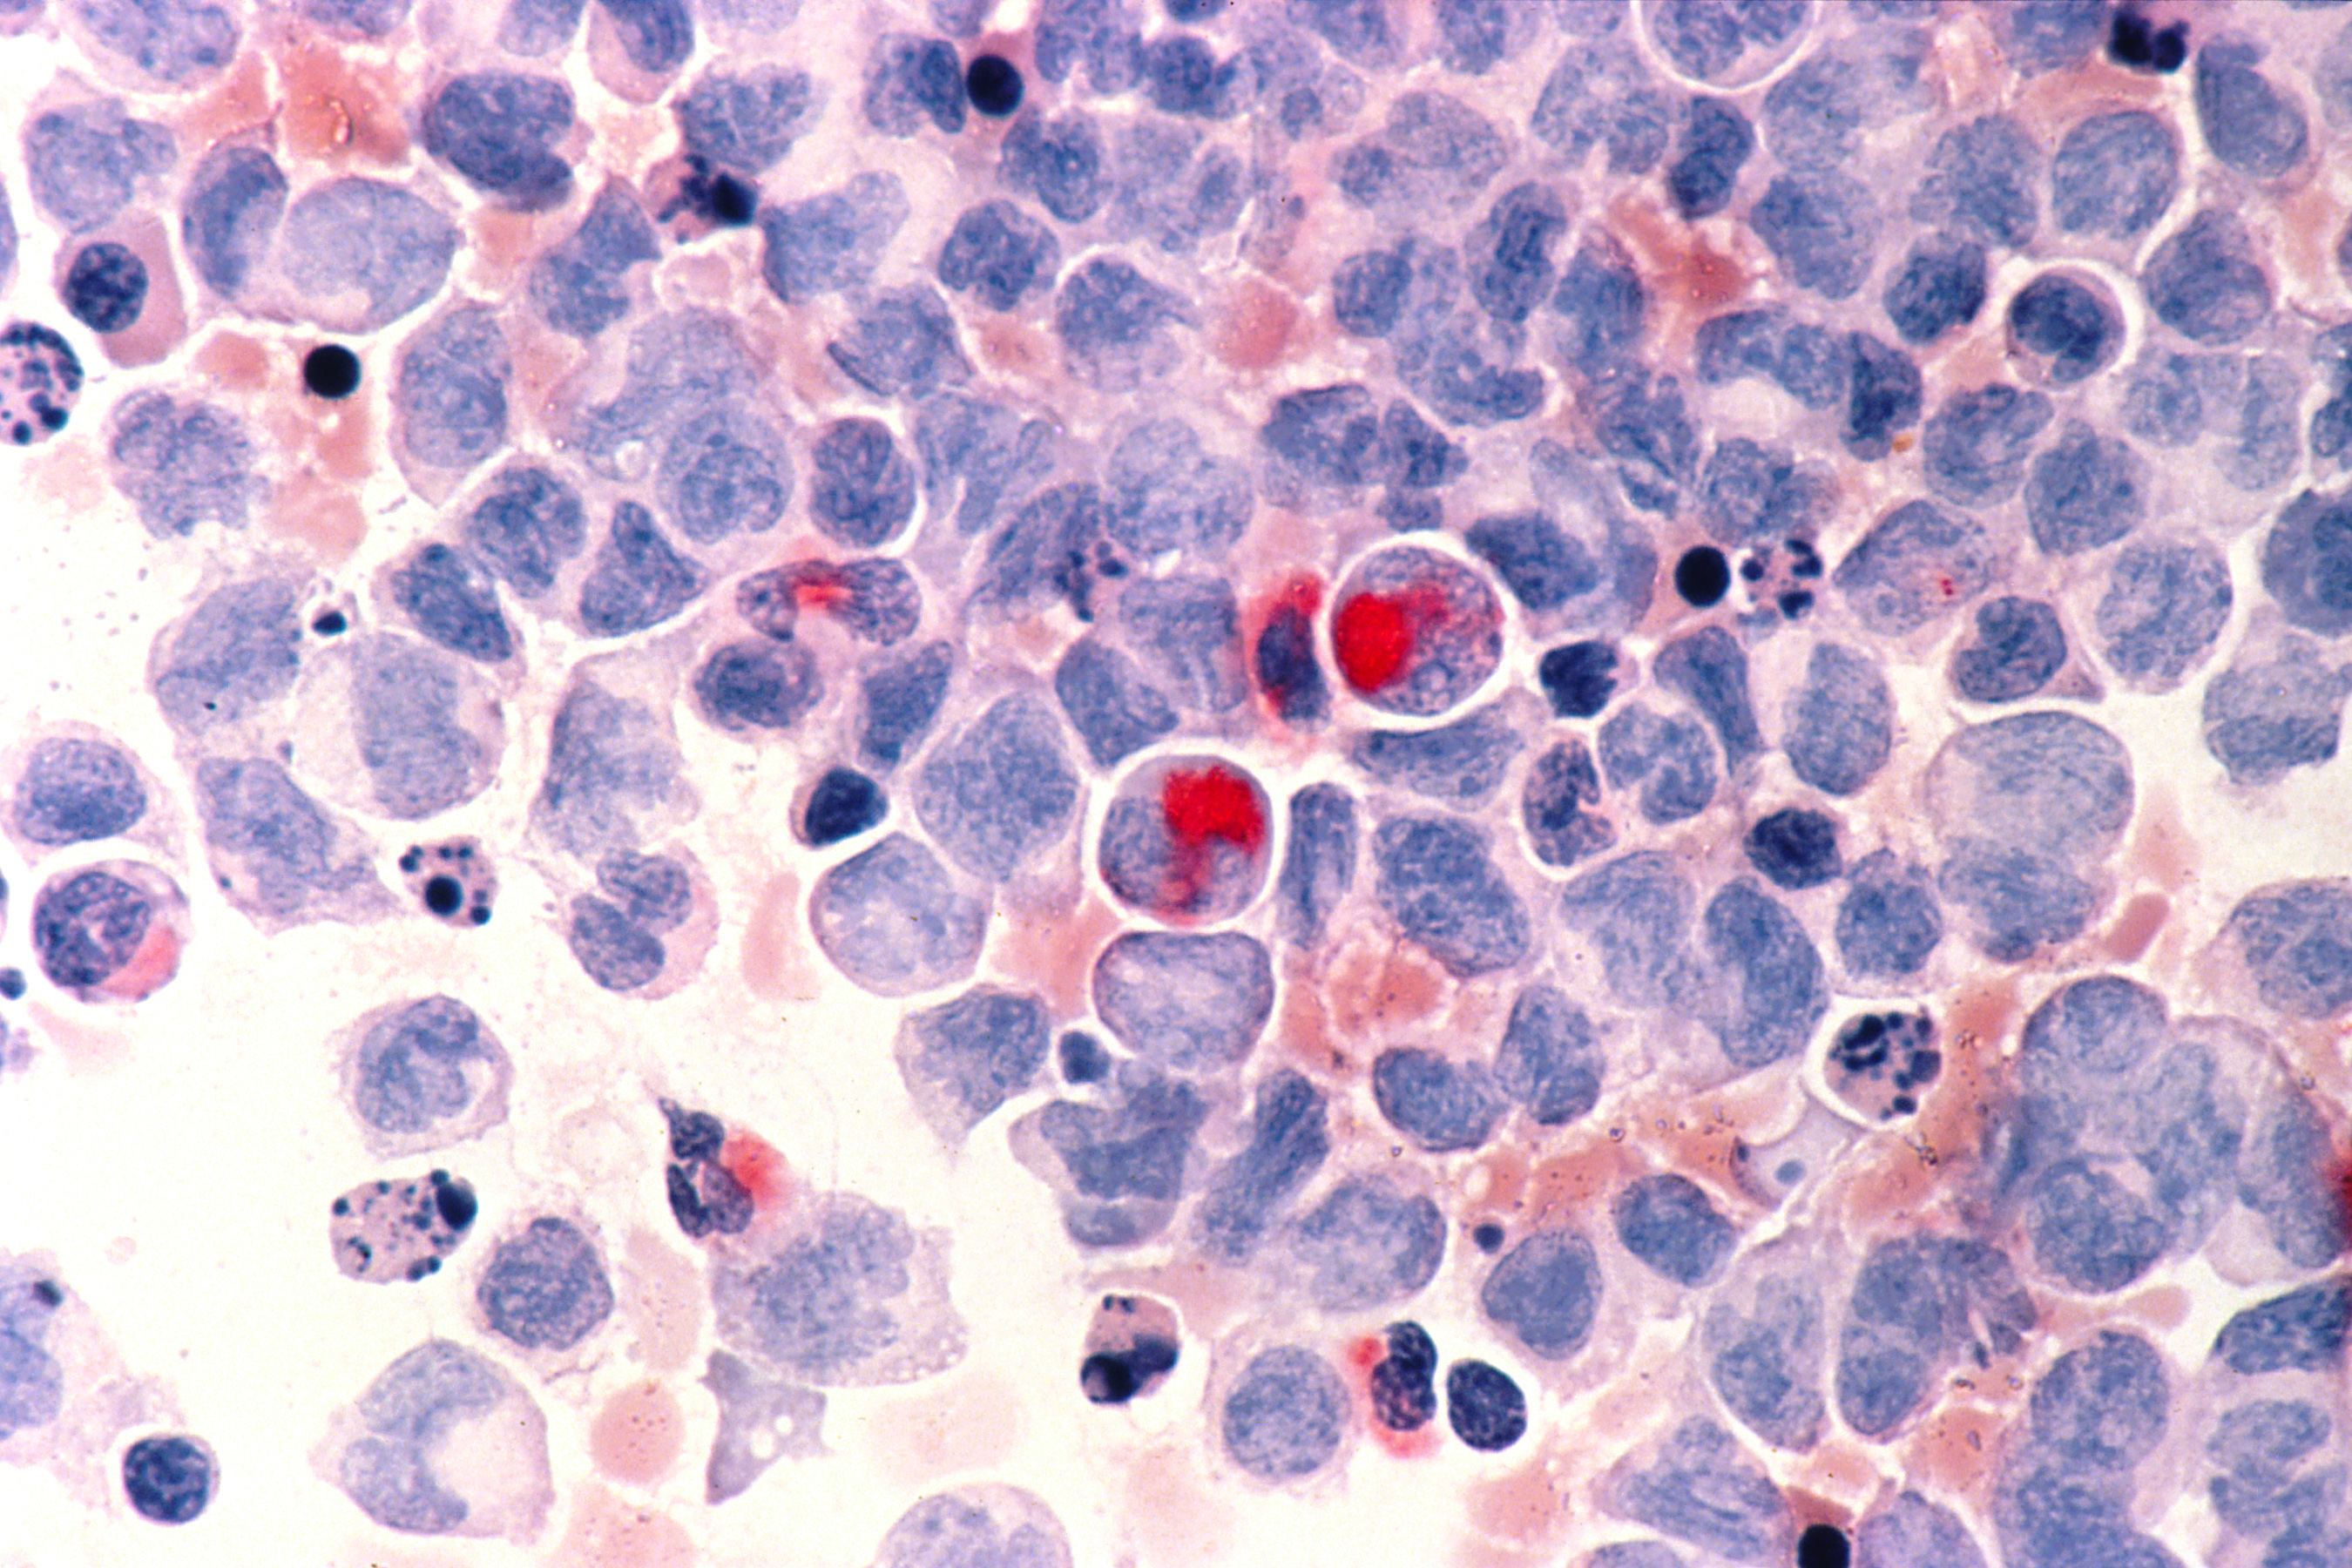 Human cells with acute myeloid leukemia